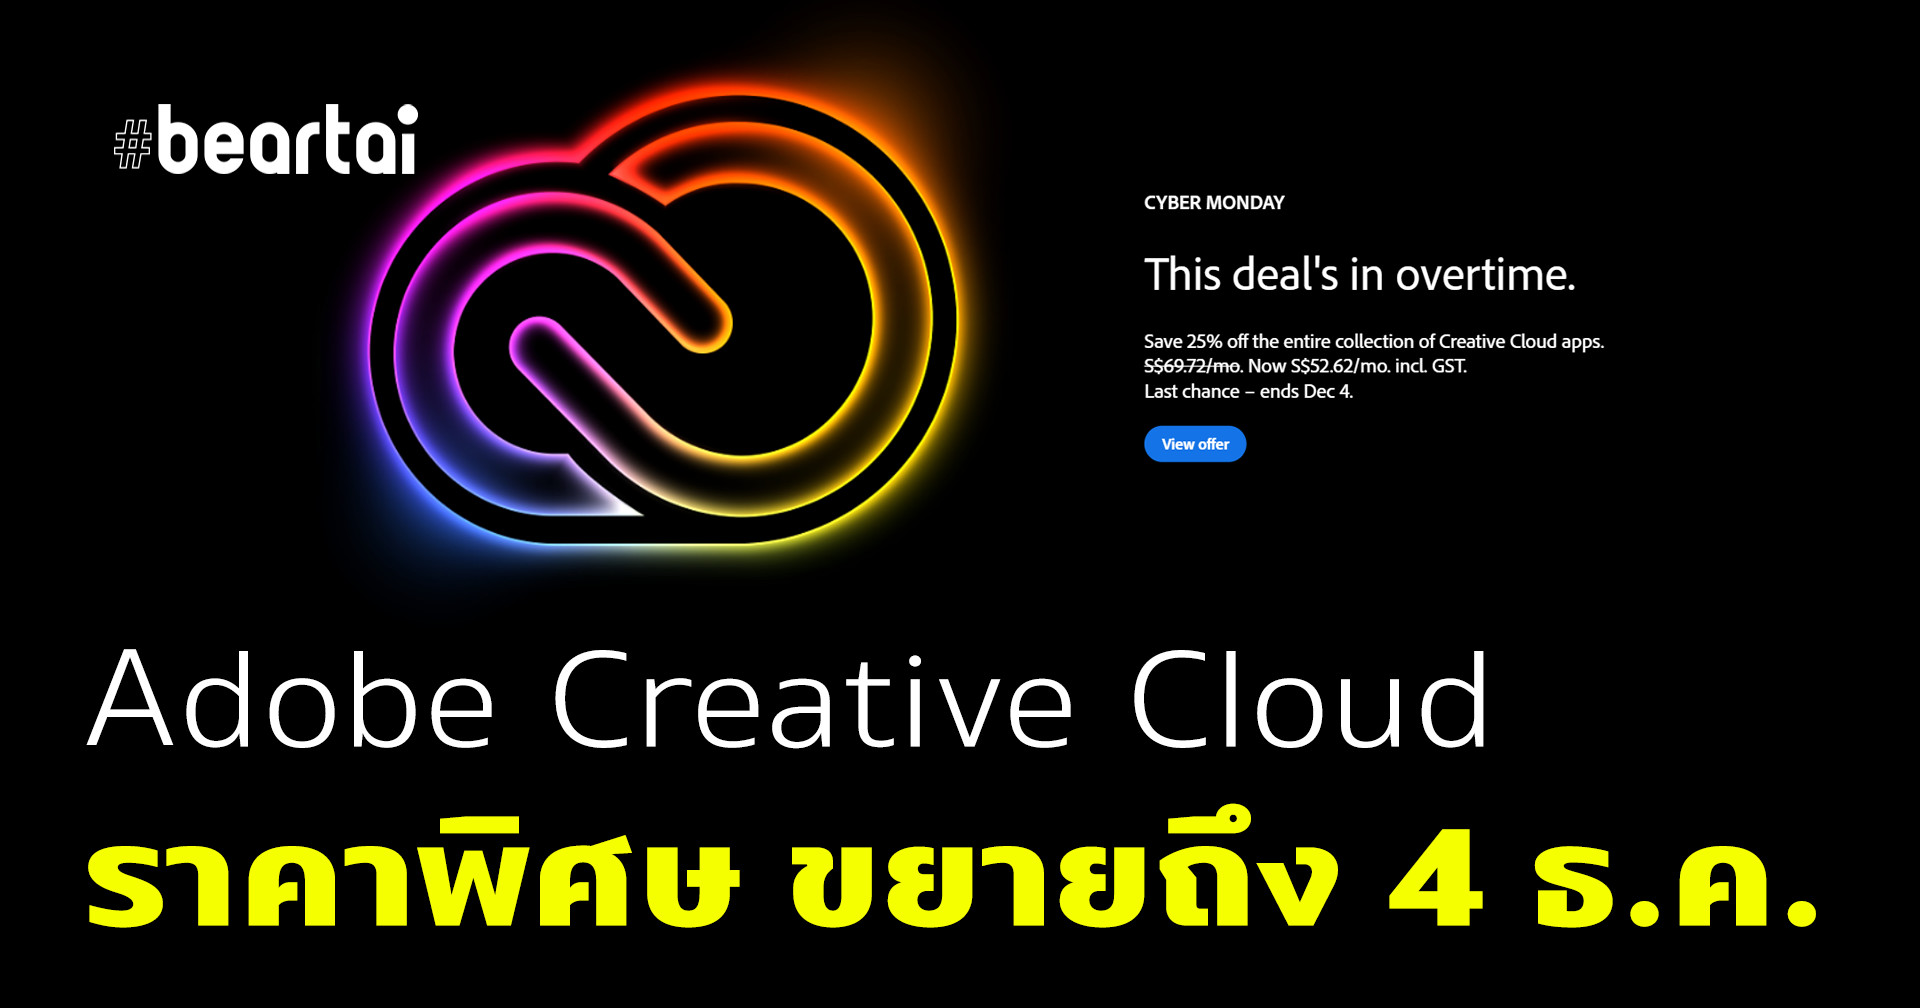 โอกาสสุดท้าย Adobe Creative Cloud ครบชุดเหลือเดือนละ 1425 บาท จากปกติเดือนละ 1888